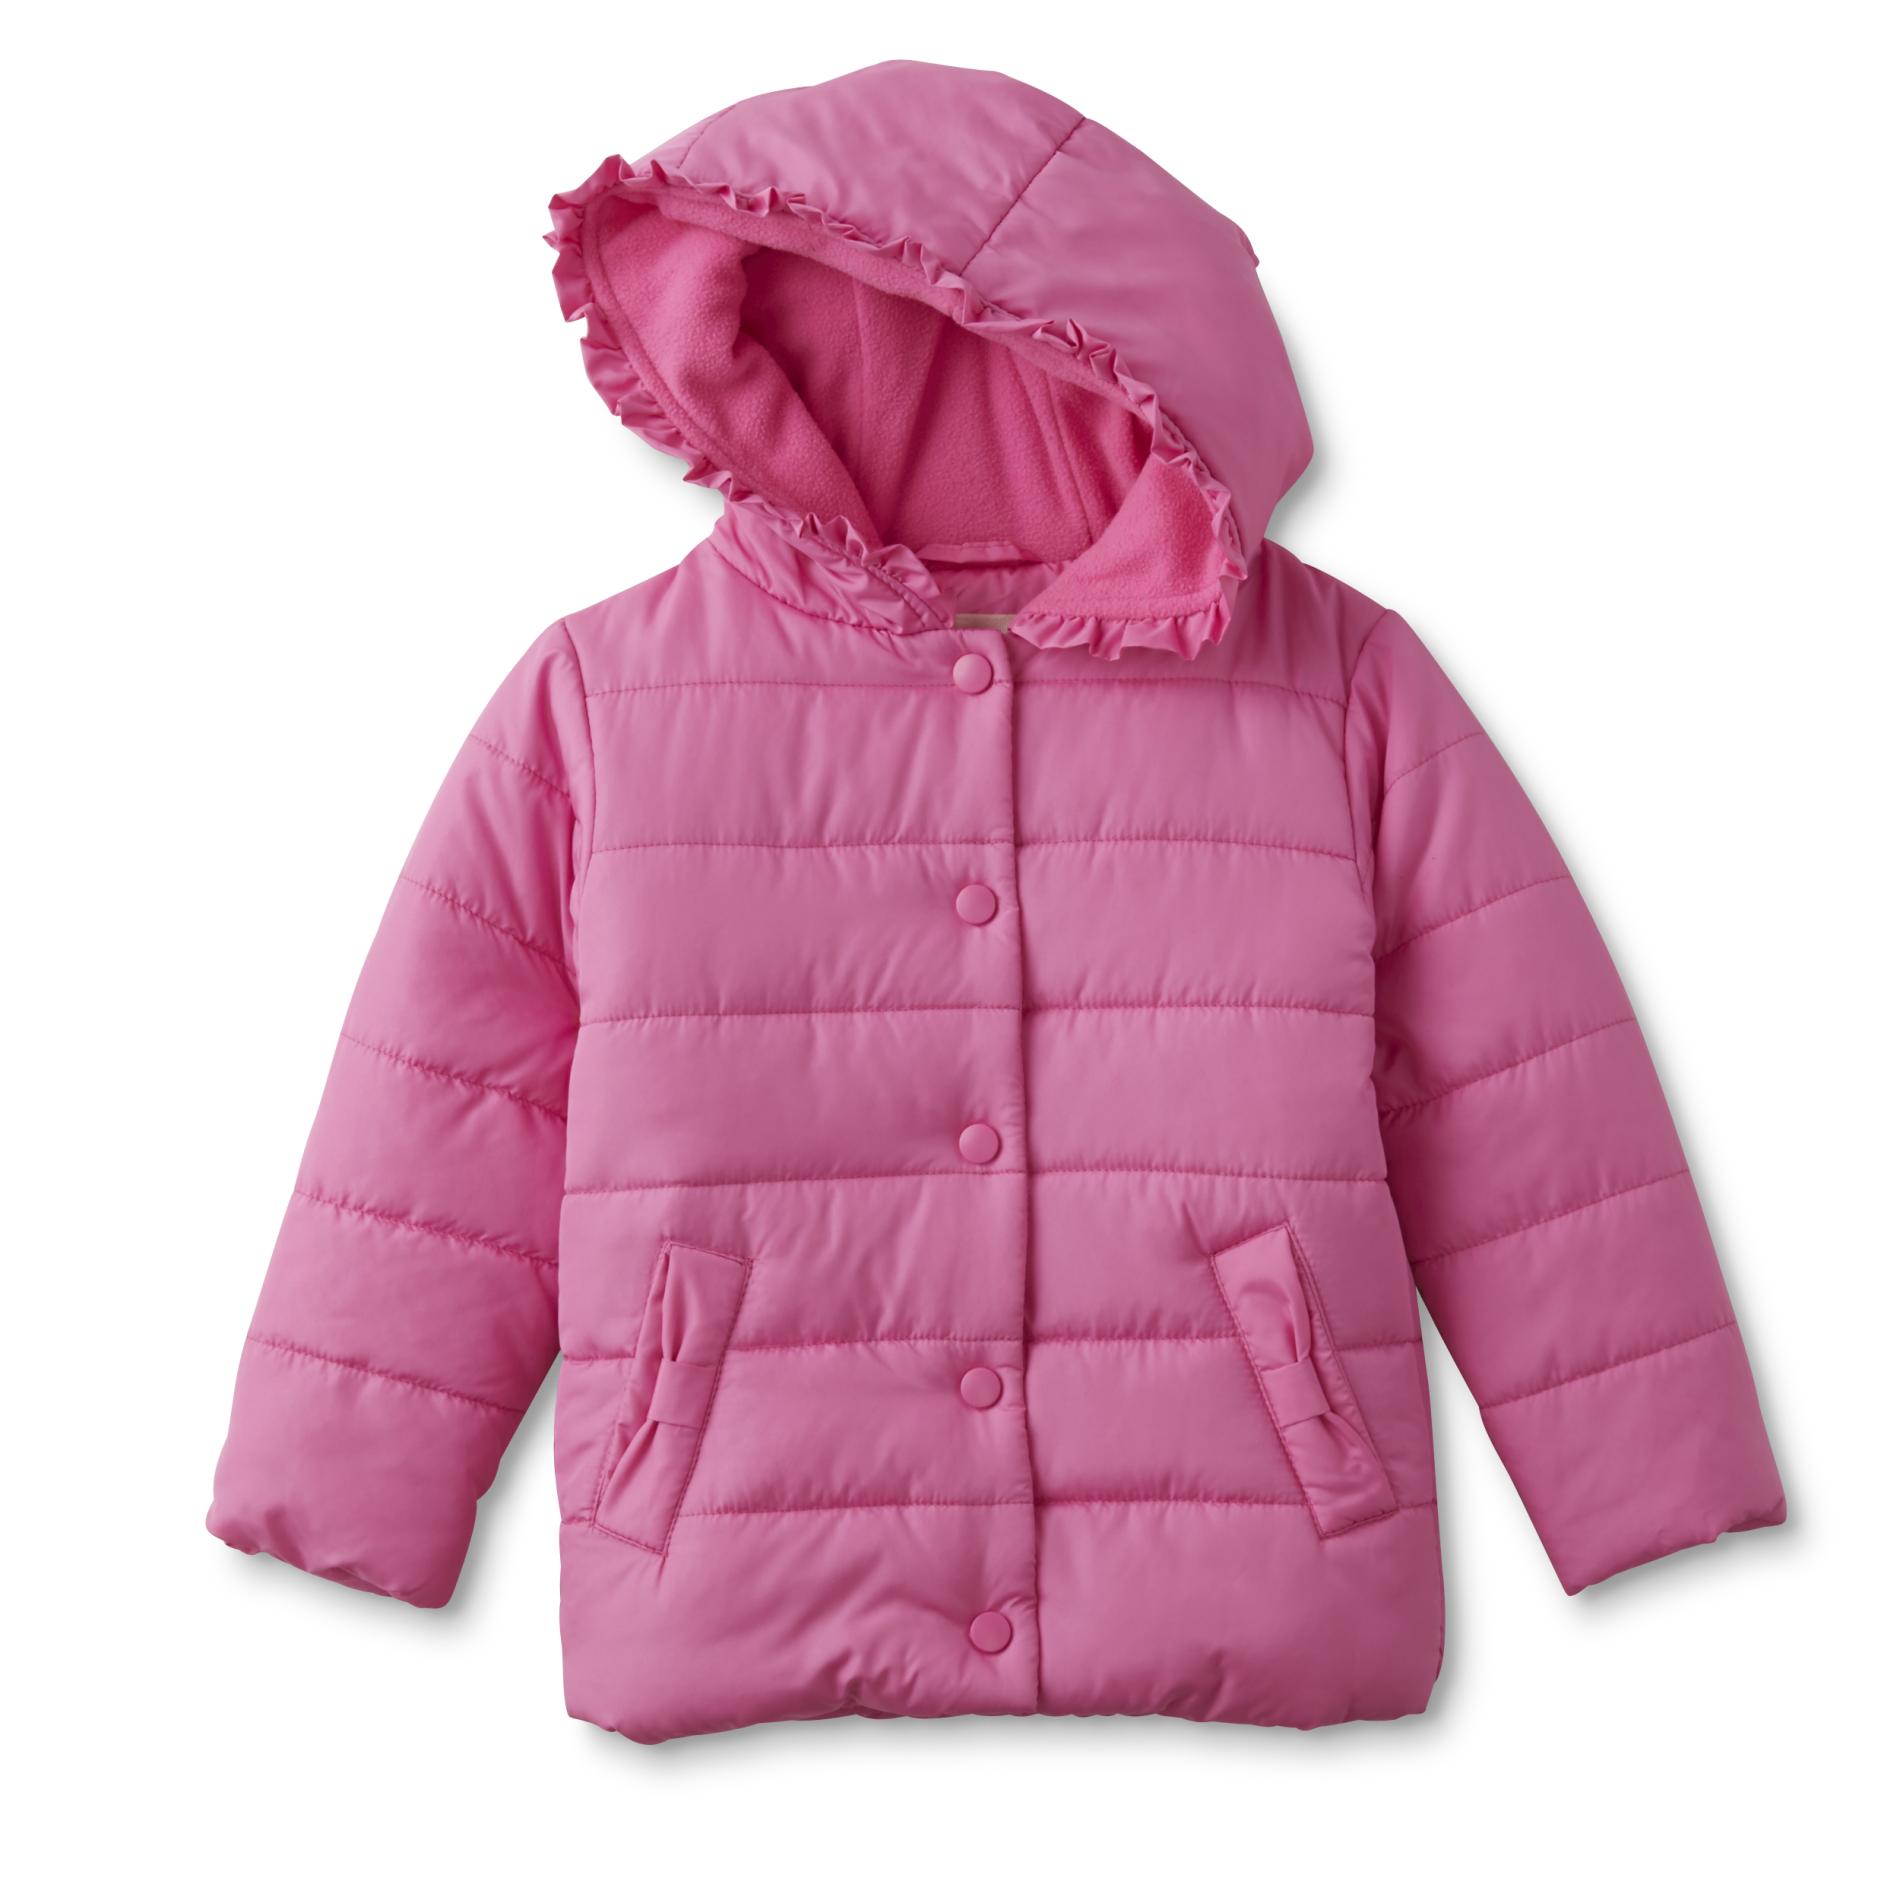 WonderKids Infant & Toddler Girl's Puffer Coat